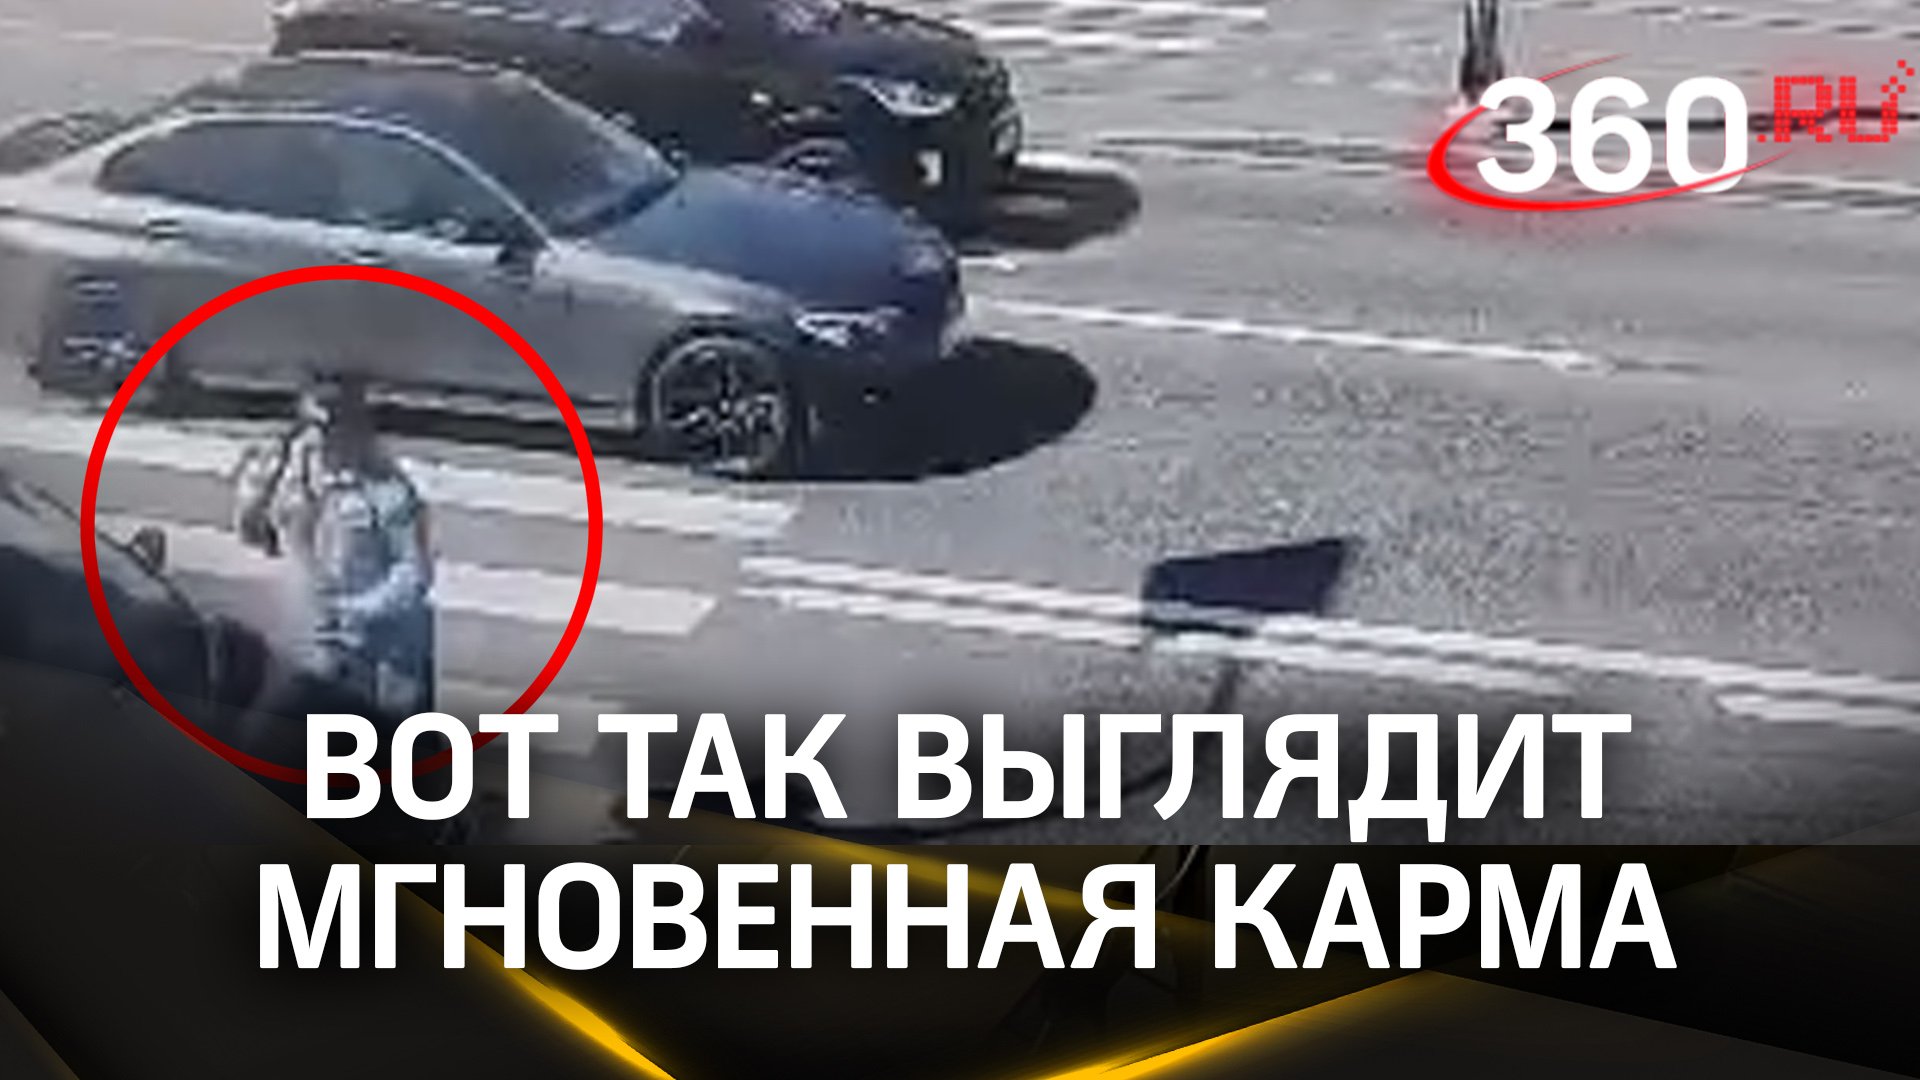 Вора сбила машина сразу после ограбления в Петербурге